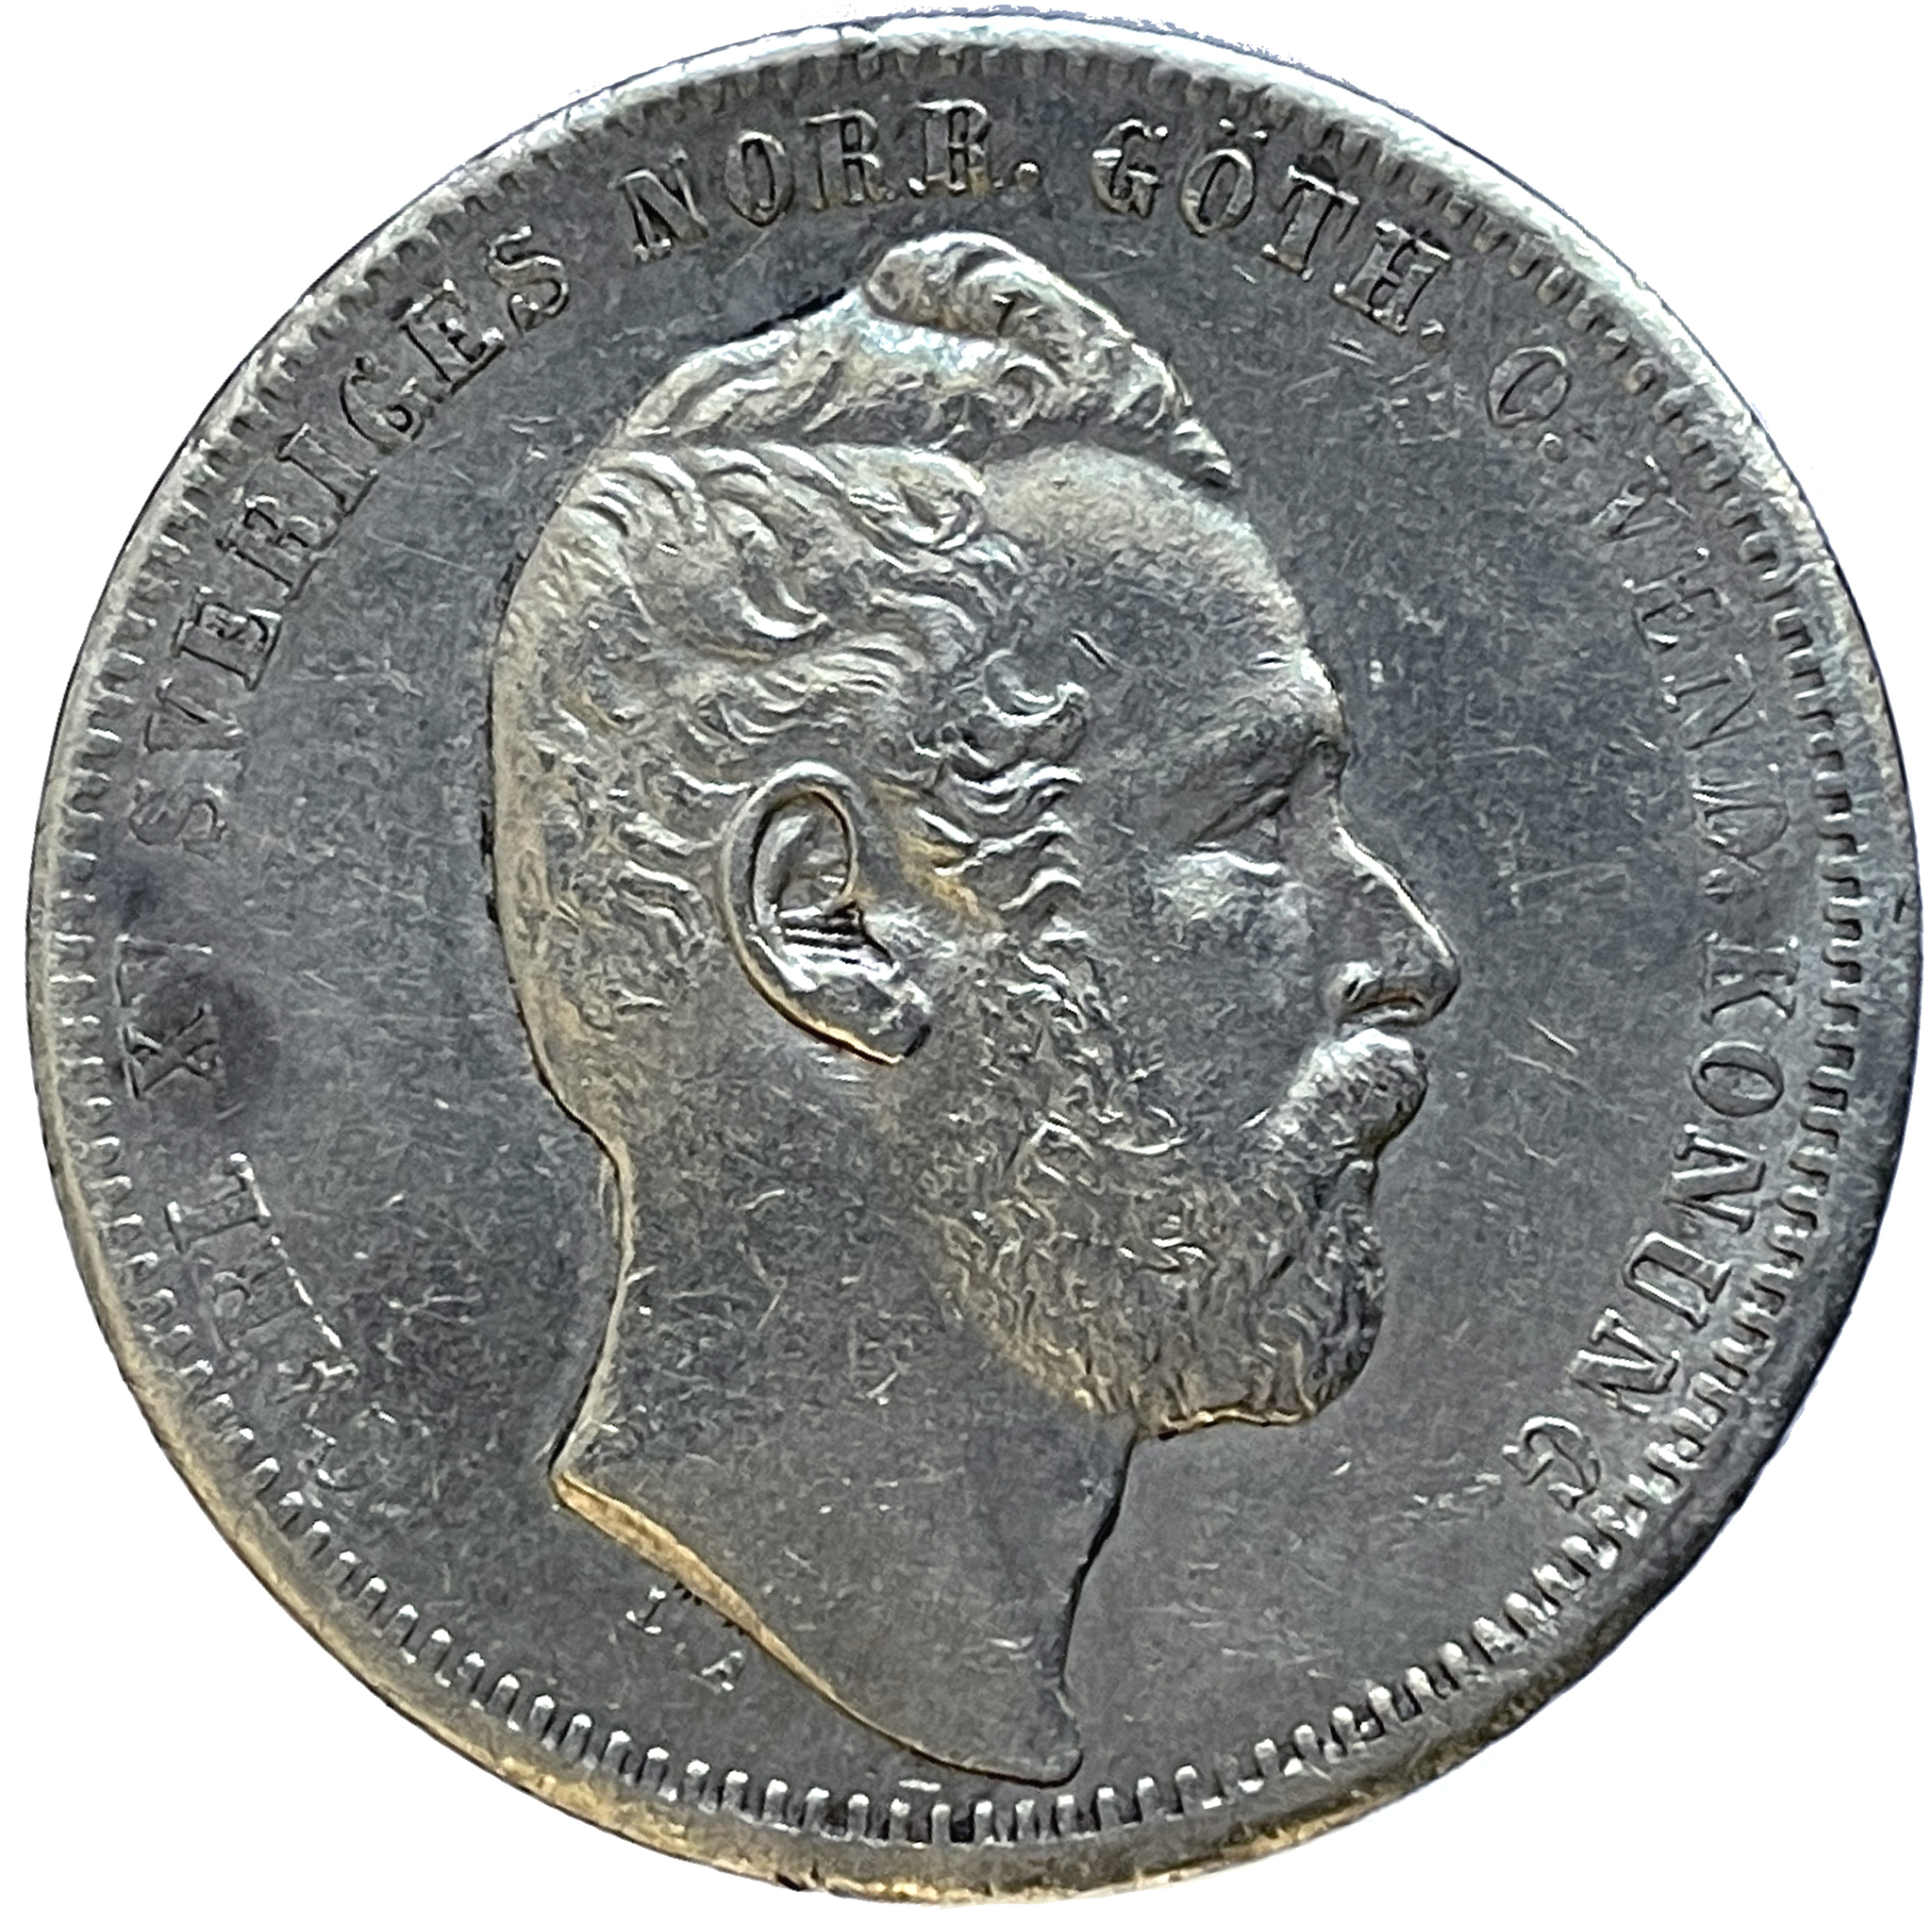 Karl XV - 1 Riksdaler Riksmynt 1860 - Härligt porträtt